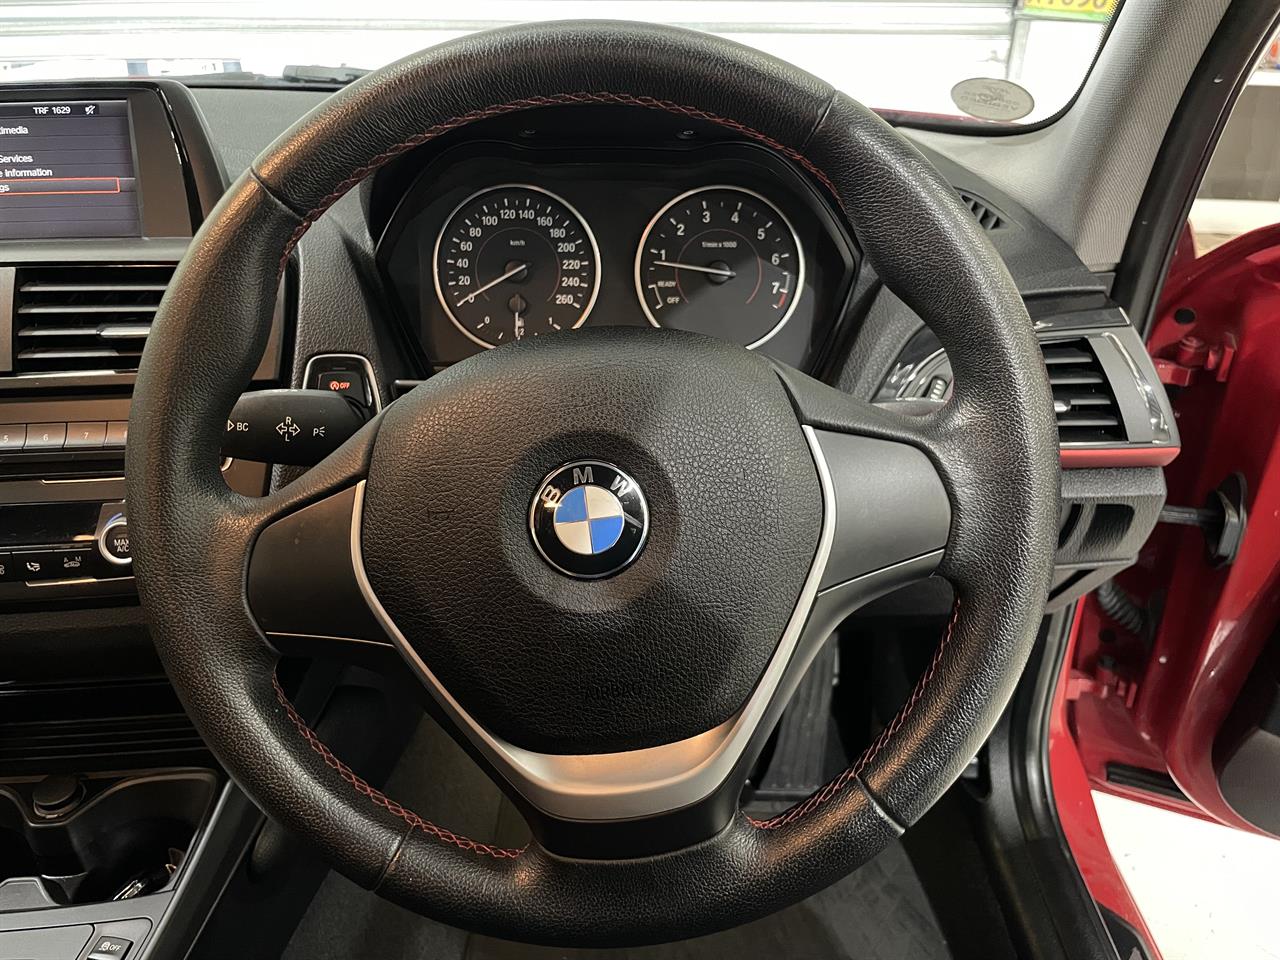 2013 BMW 116i